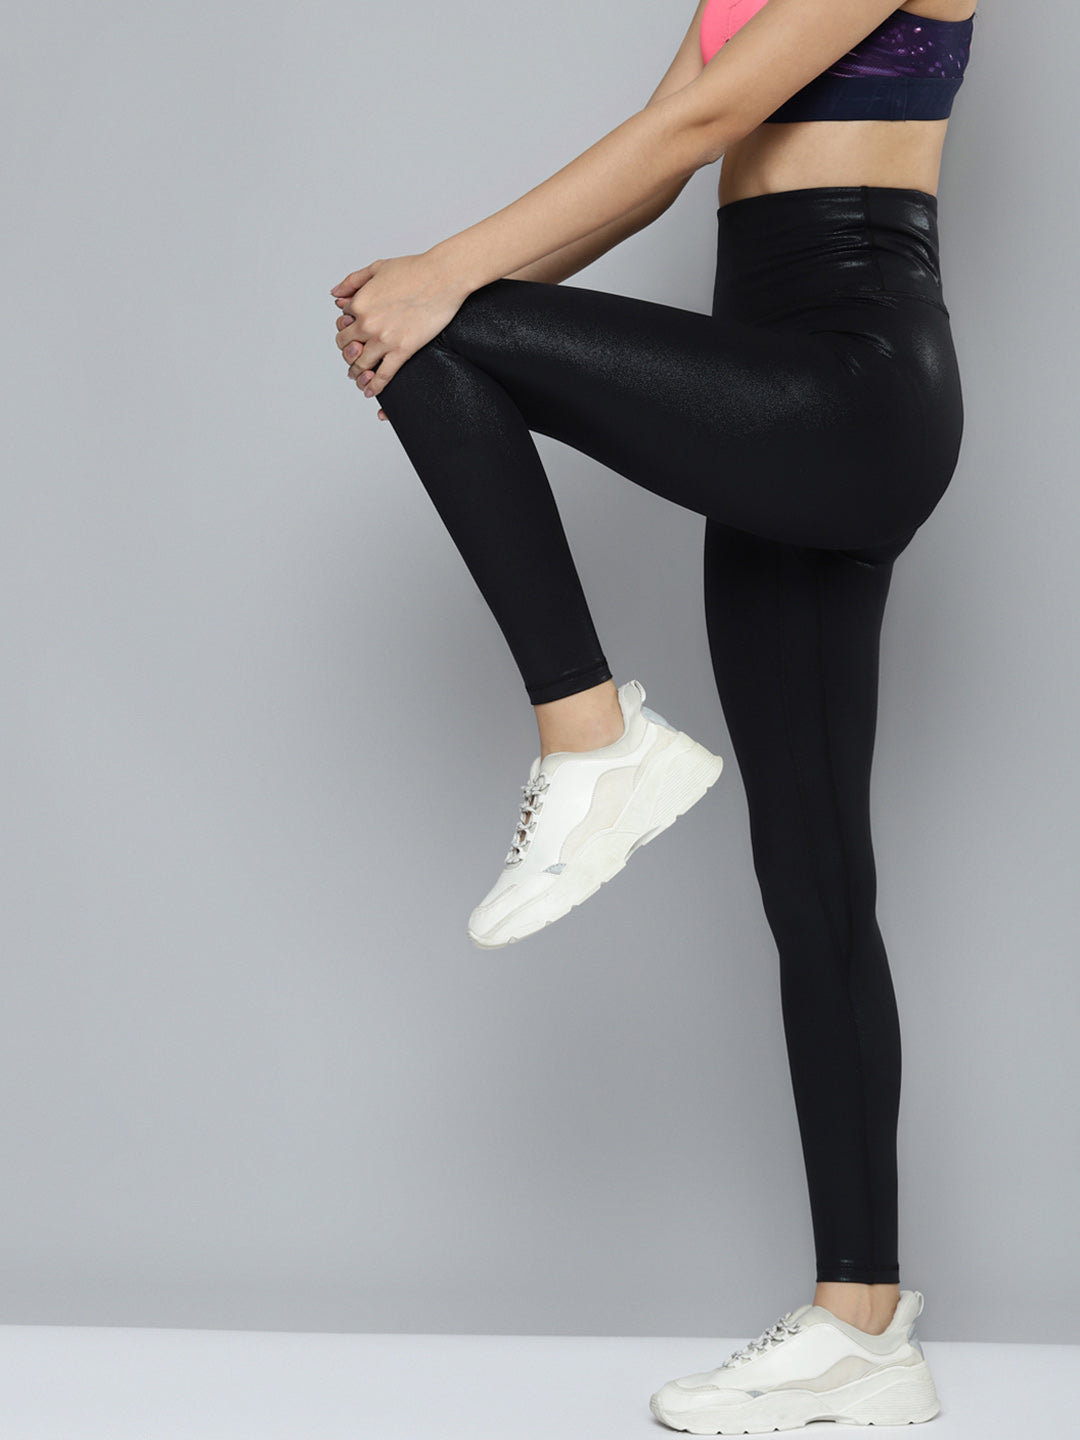 WOMEN'S GYM LEGGINGS - BLACK POCKET LEGGINGS – Iris Fitness Online